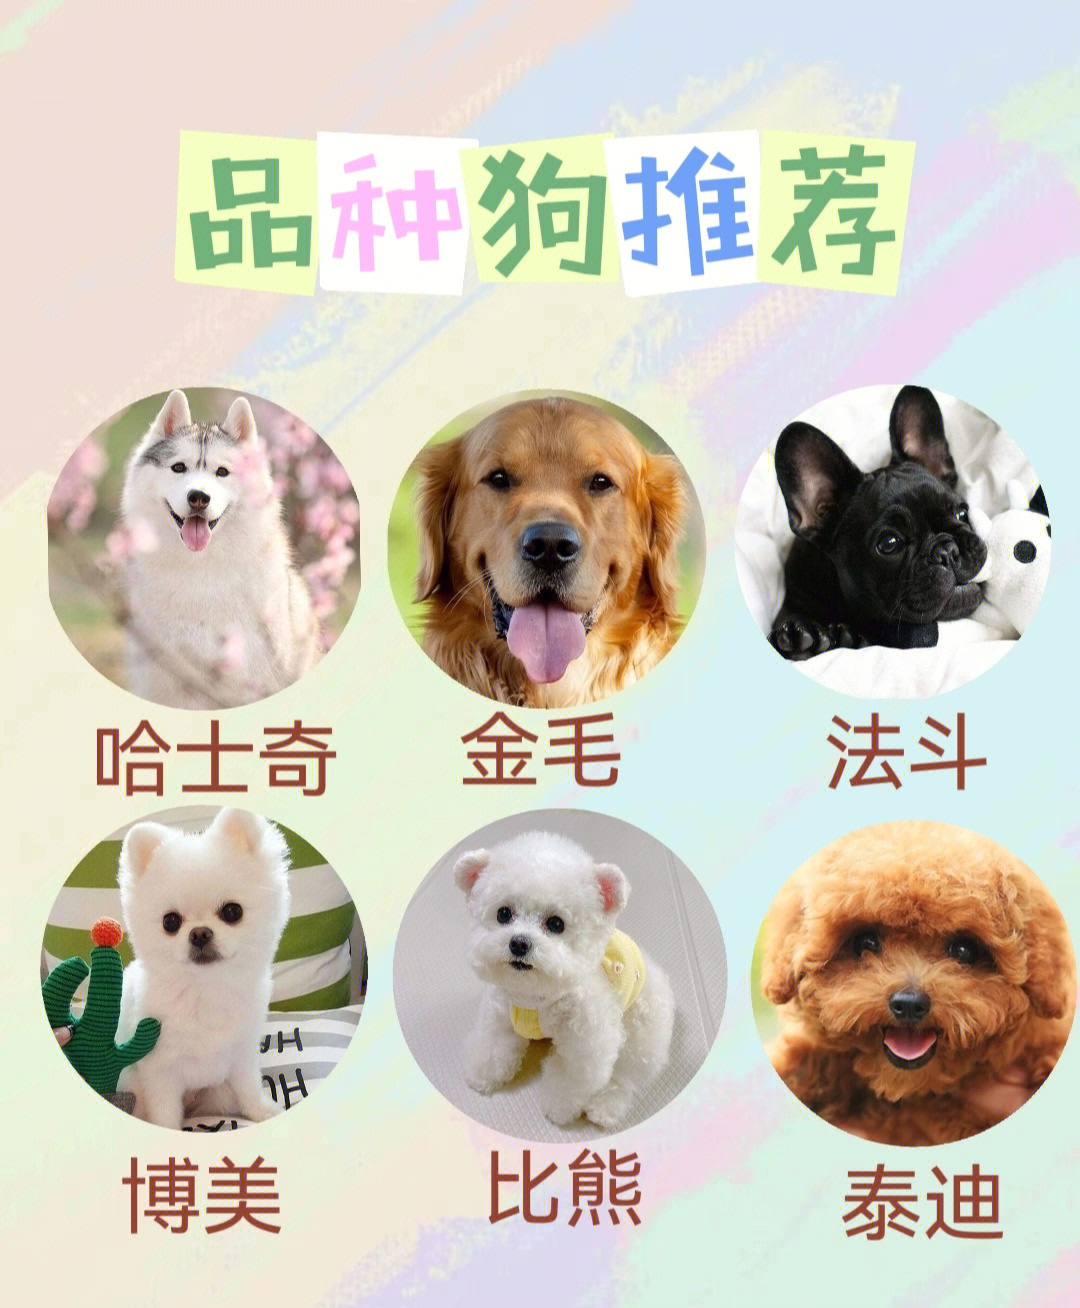 以上整理了一些较为常见的犬类品种,狗狗价格因 区,血统,年龄有差异